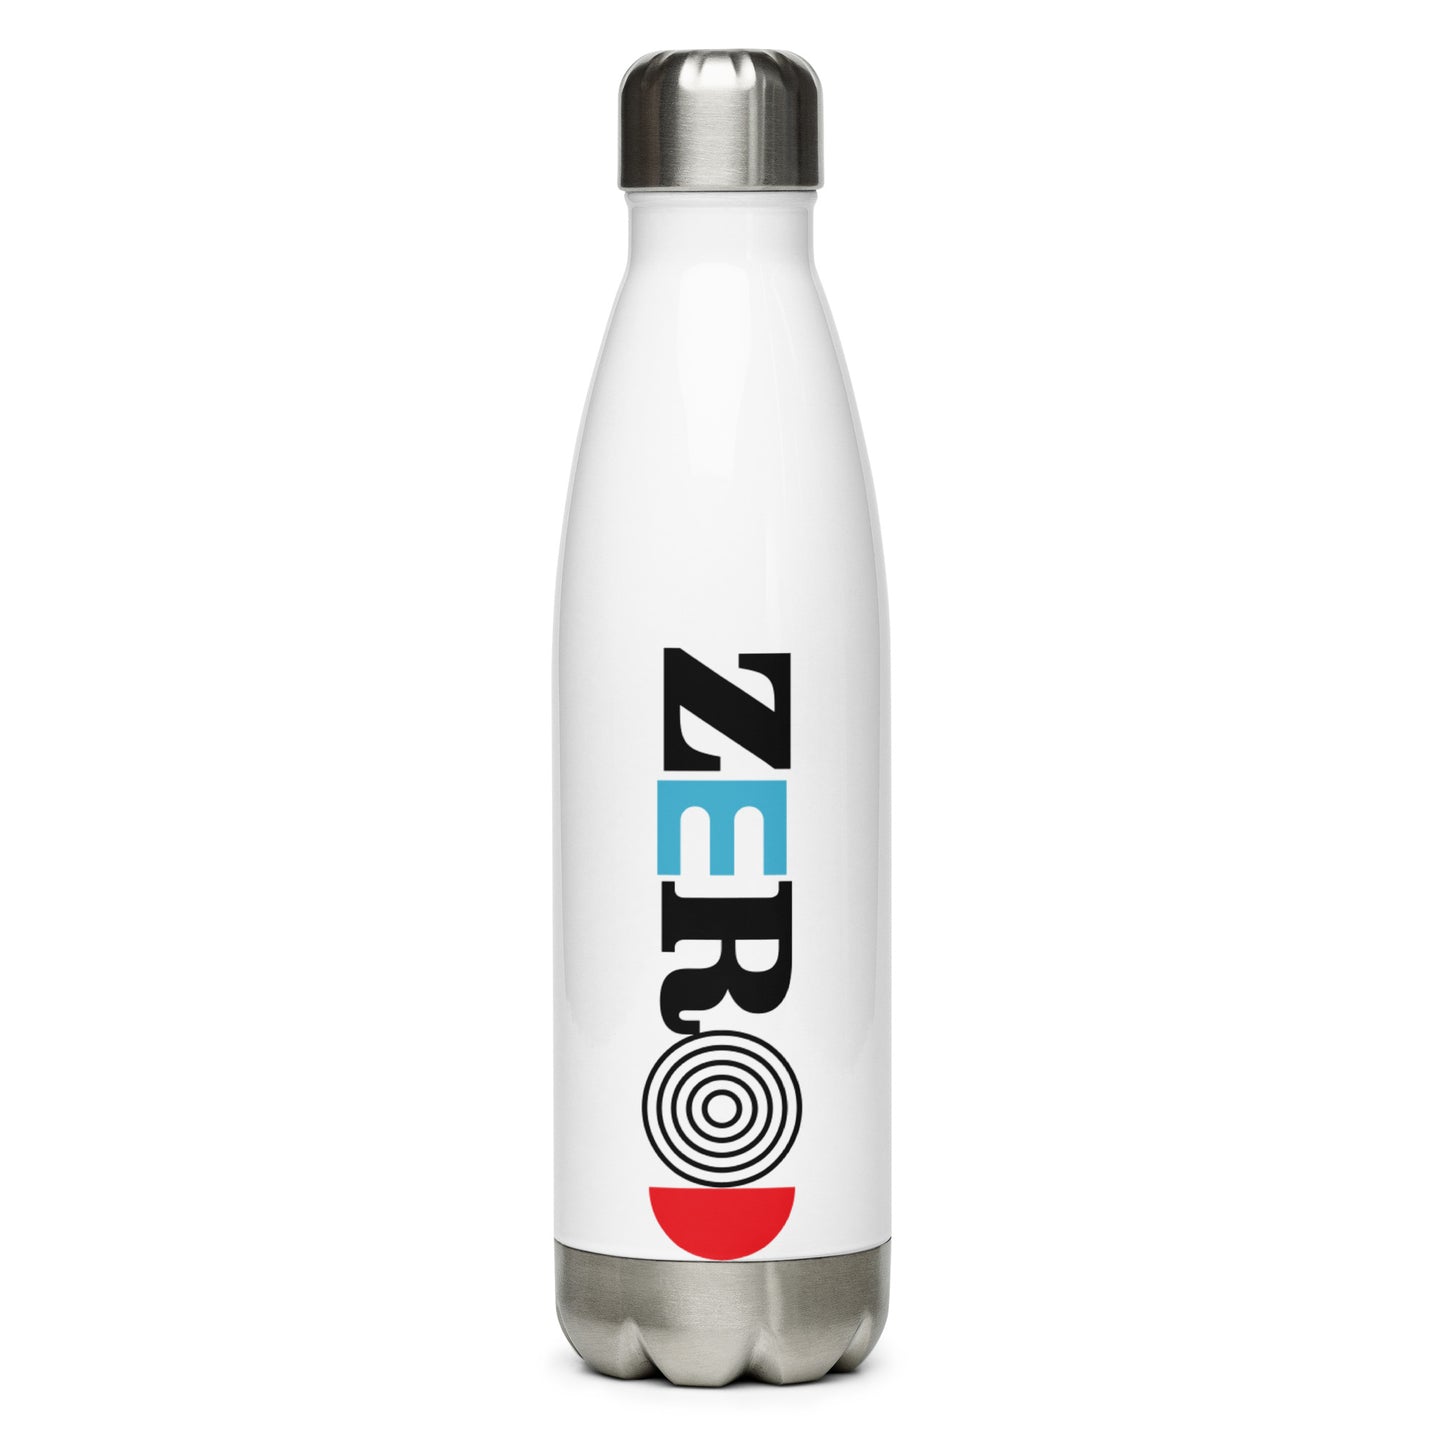 Zero Stainless Steel Water Bottle